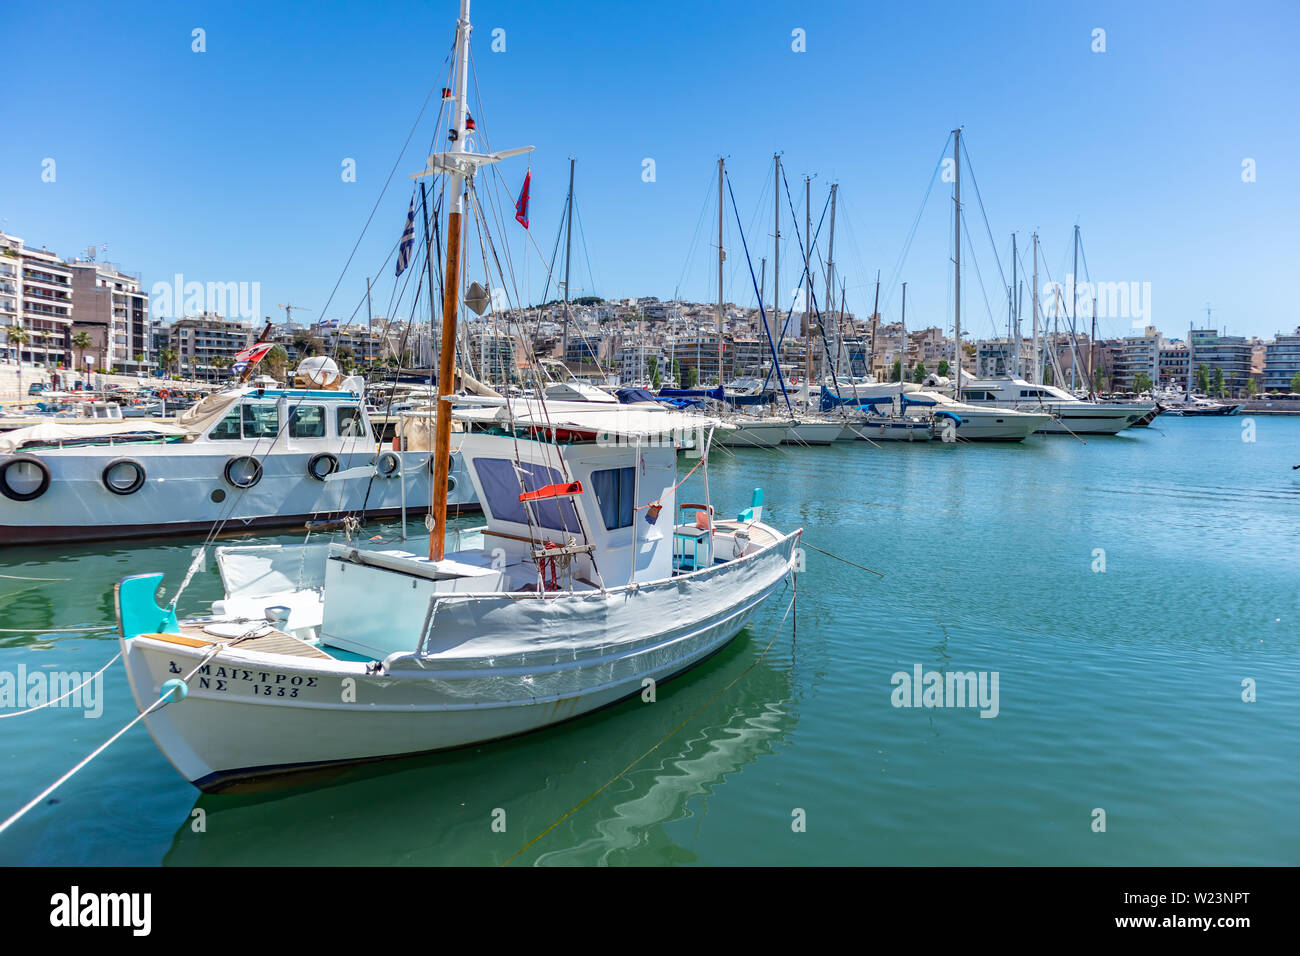 El 29 de abril de 2019. Marina Zeas en el Pireo, Grecia. Amarrados los yates y barcos de pesca con mástiles en contraste con el azul del mar en calma. Reflejo de barco, ciudad y s Foto de stock